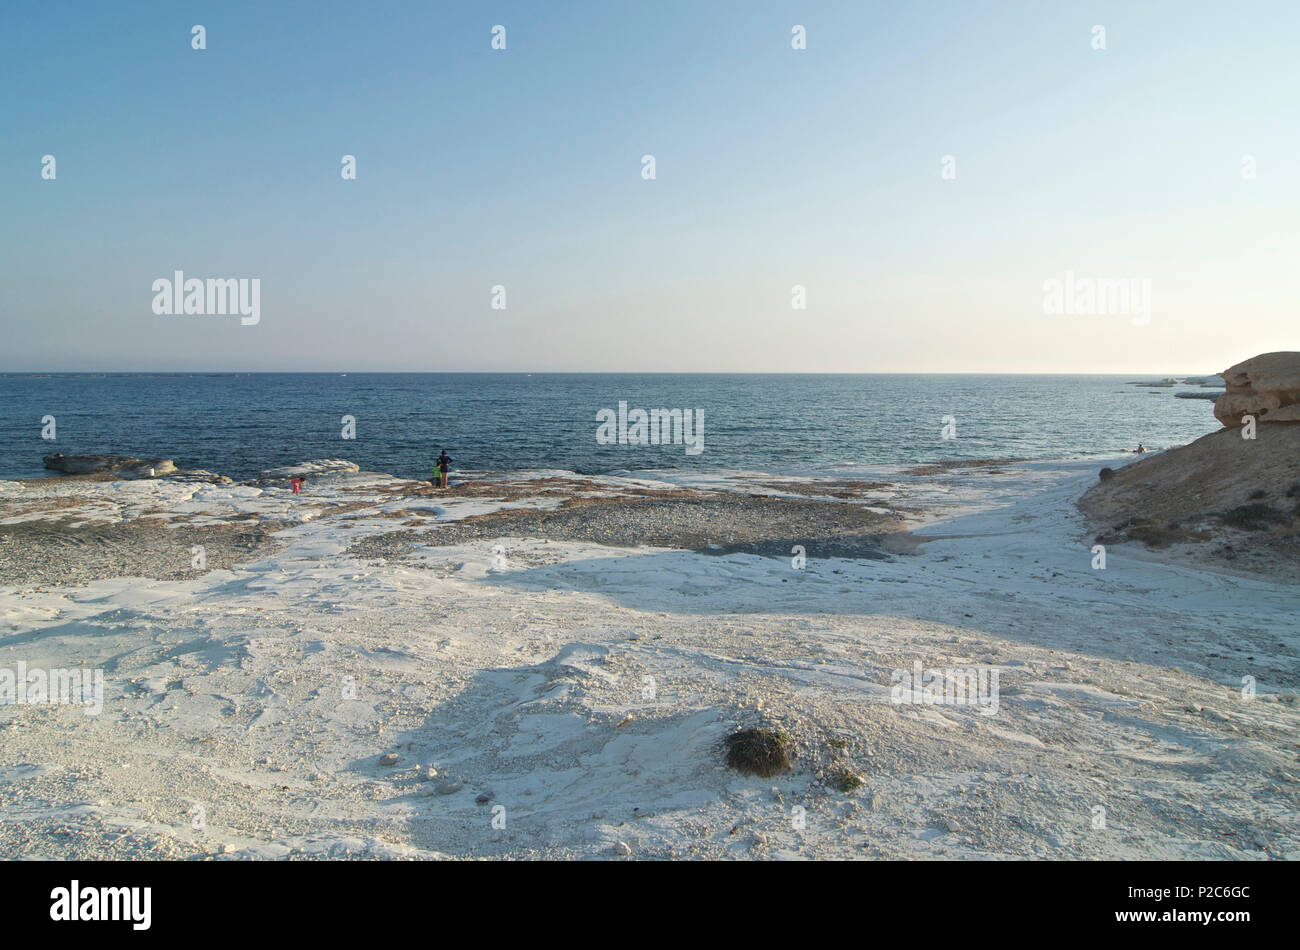 Rocas blancas de Playa del Gobernador, la solitaria playa de guijarros y unas pocas personas, Limassol, Chipre Foto de stock